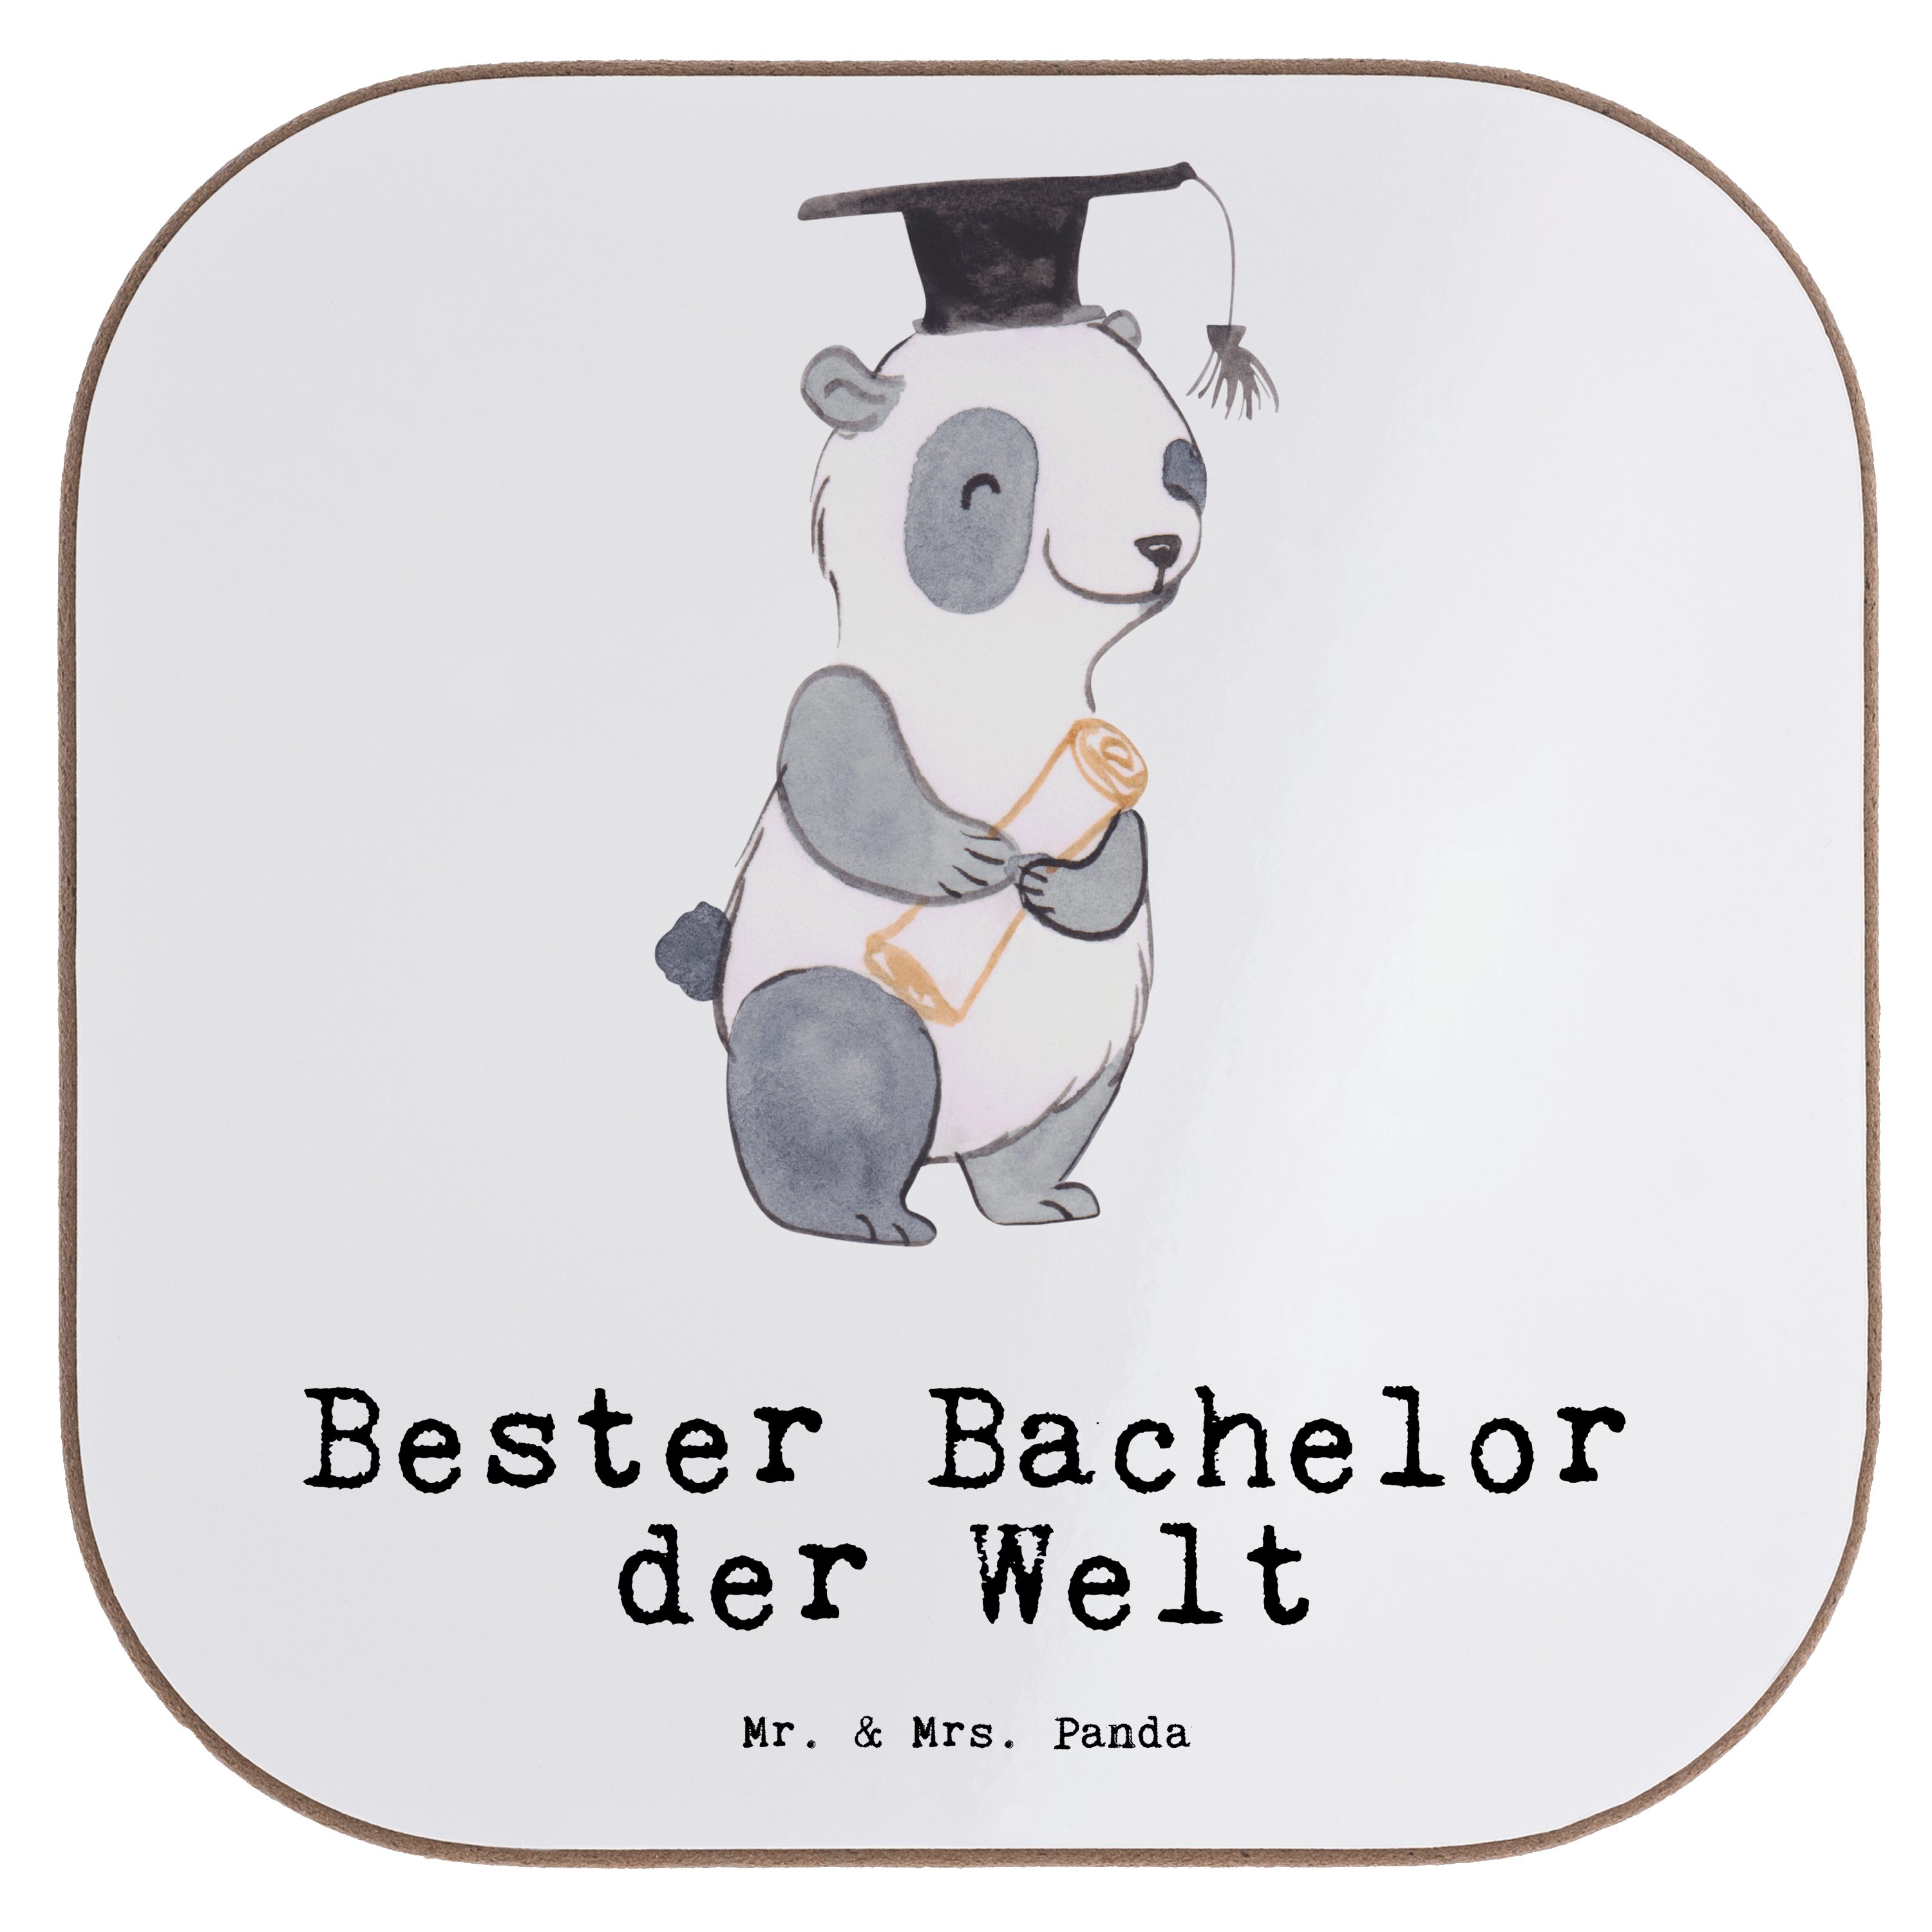 Mr. & Mrs. Panda Geschenk, Panda der Spaß, - Getränkeuntersetzer Welt - Weiß 1-tlg. Bachelor Bester Glasuntersetz